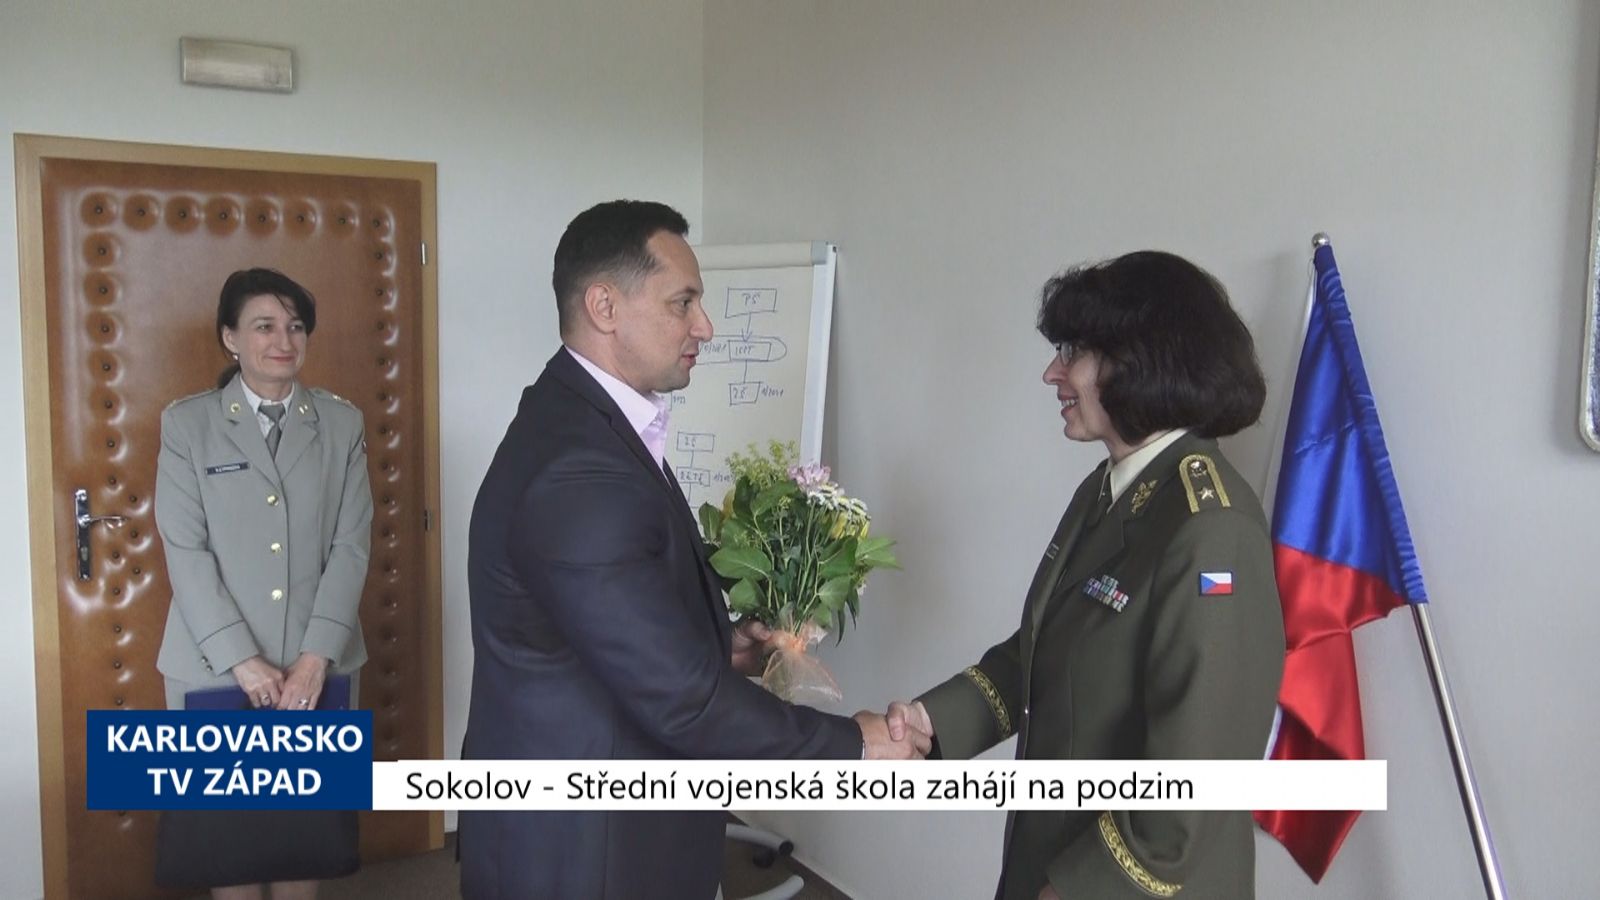 Sokolov: Střední vojenská škola zahájí na podzim (TV Západ)